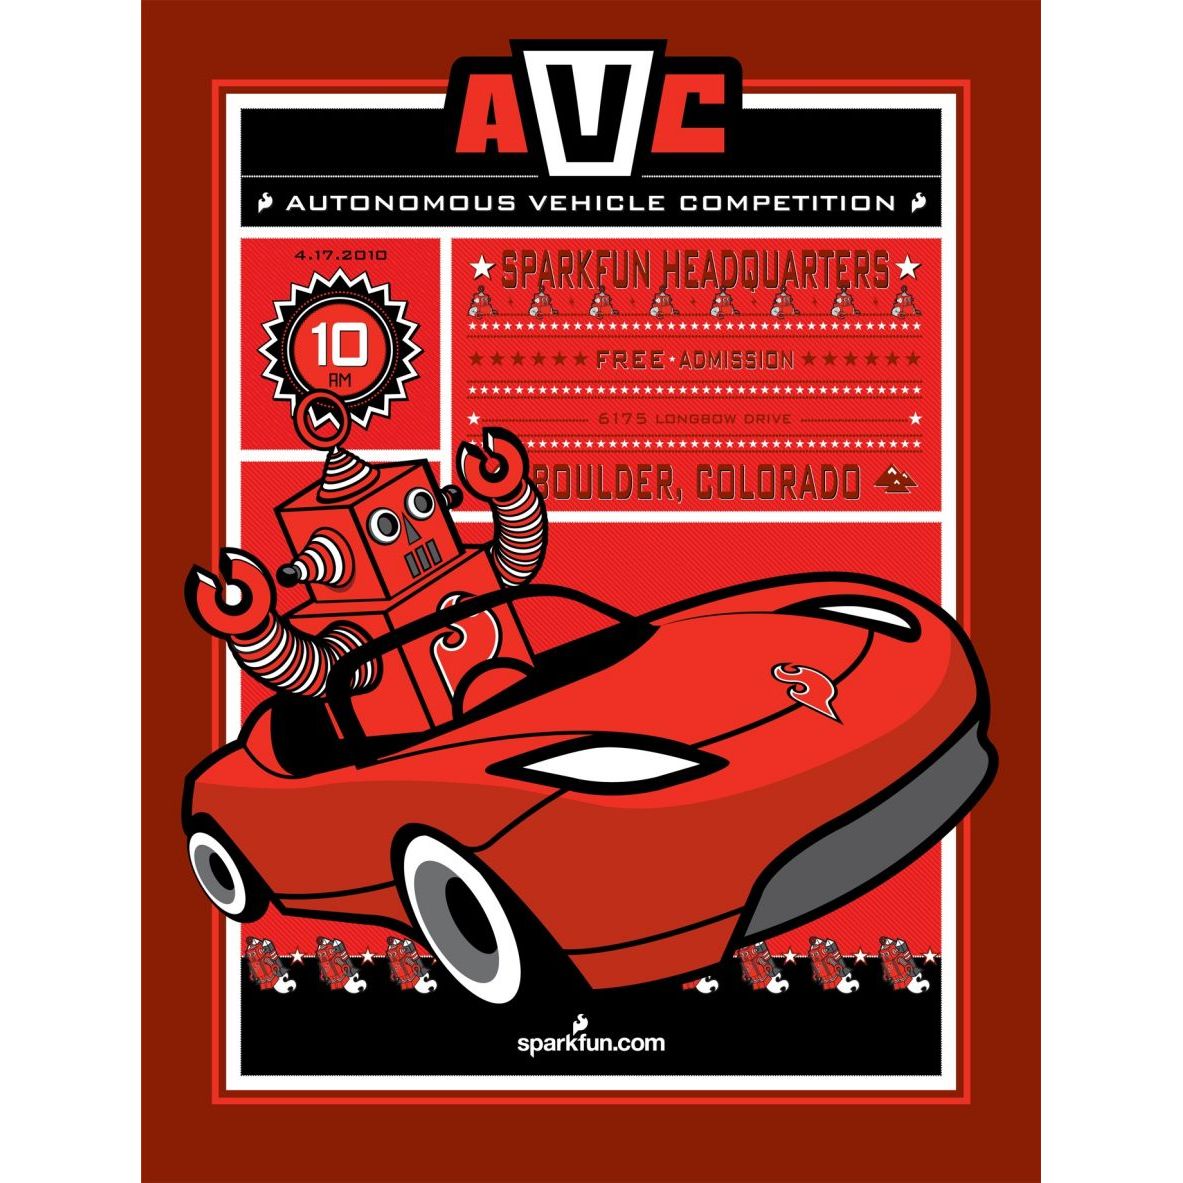 Autonomous Vehicle Competition Poster 2010